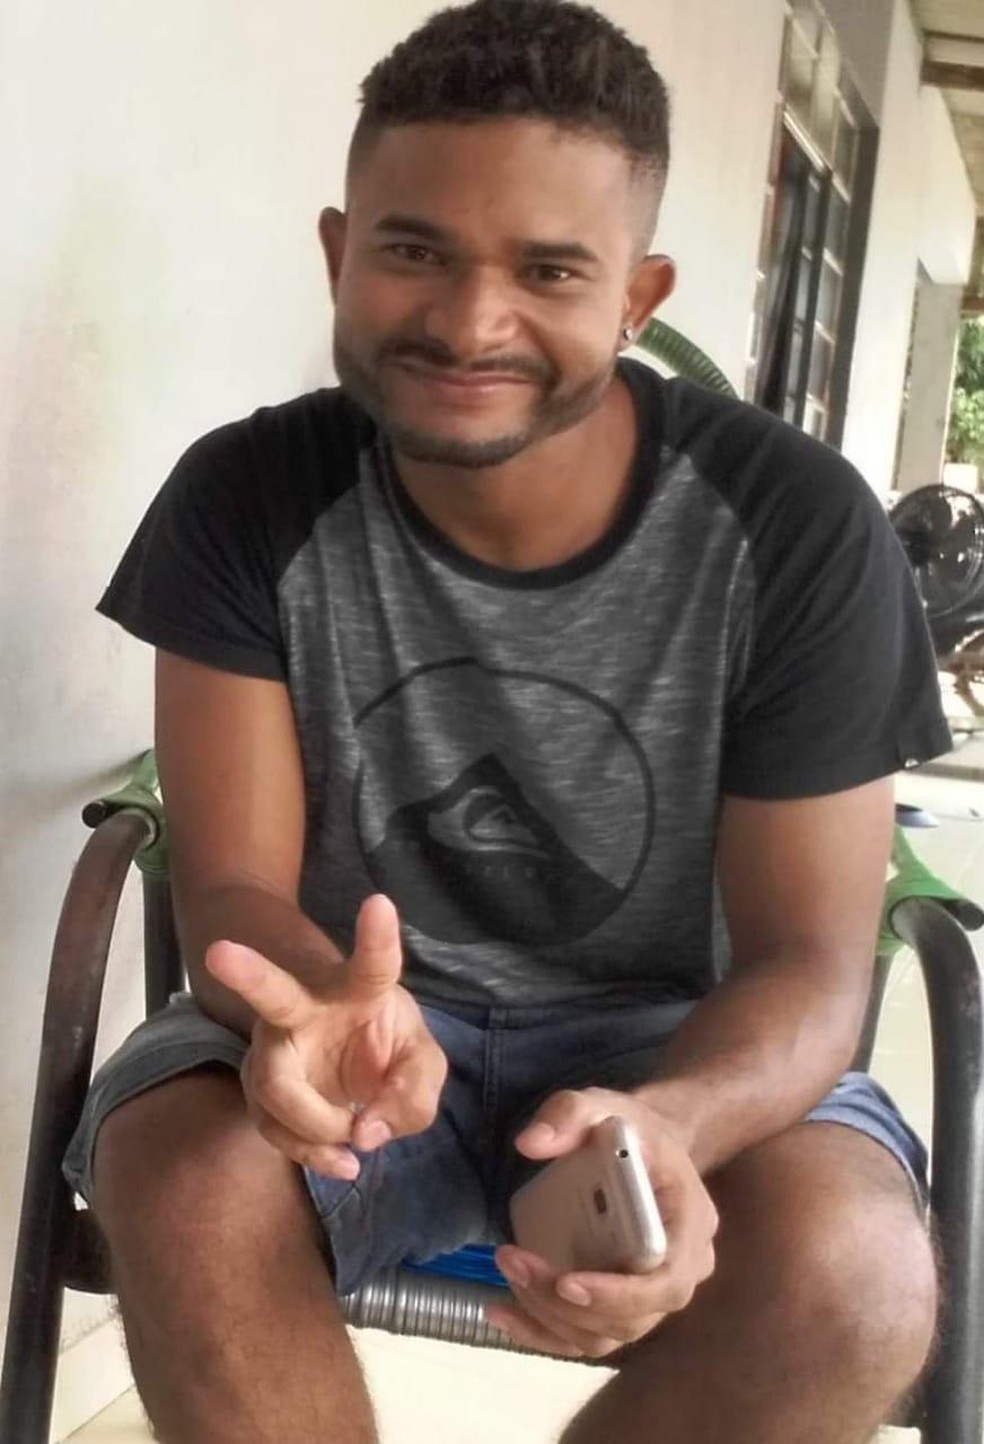 Lumar Lopes, de 28 anos, confessou o crime à família em Sorriso — Foto: Arquivo pessoal